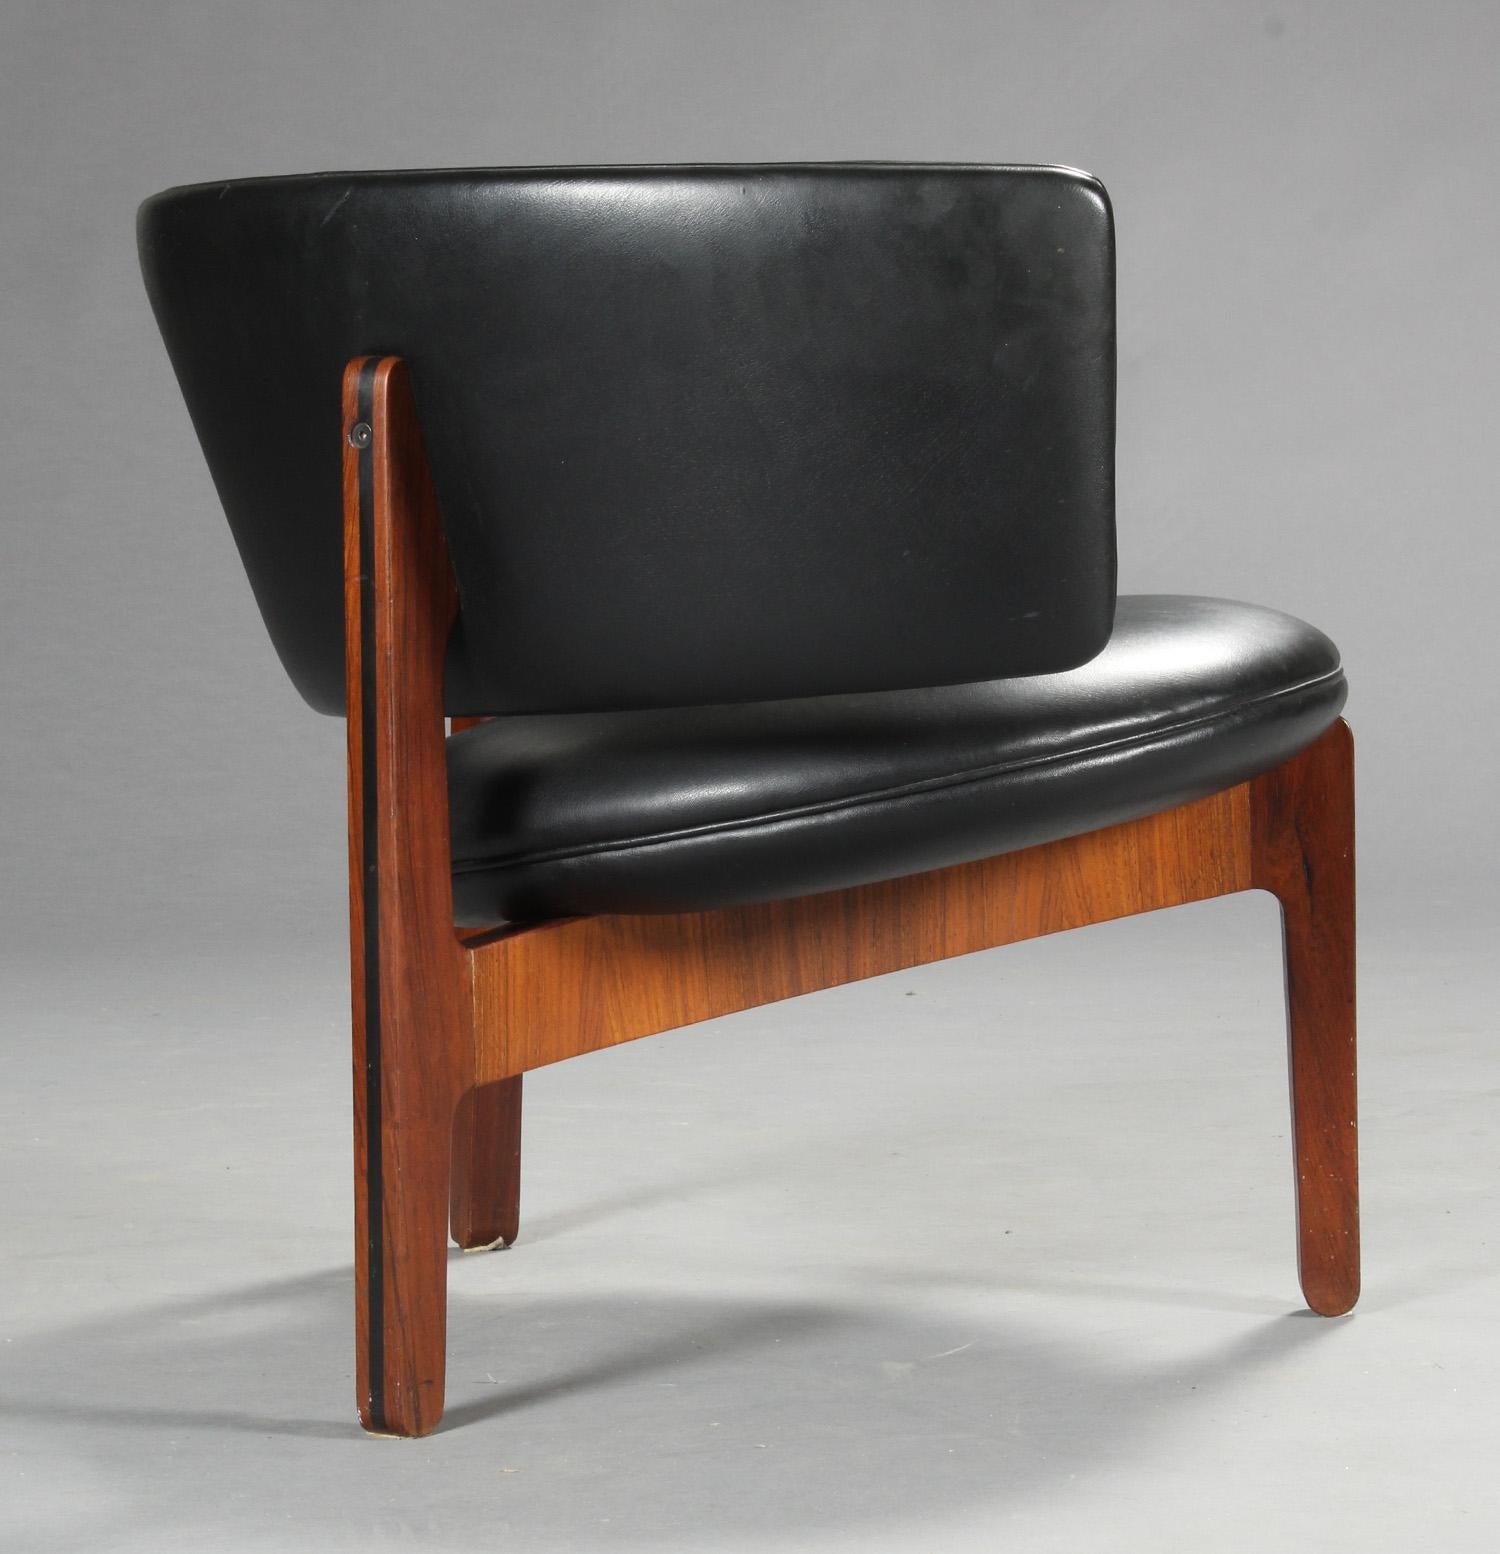 Scandinavian Modern 1960s Fully Restored Sven Ellekaer Danish Rosewood Easy Chair by Chr. Linneberg